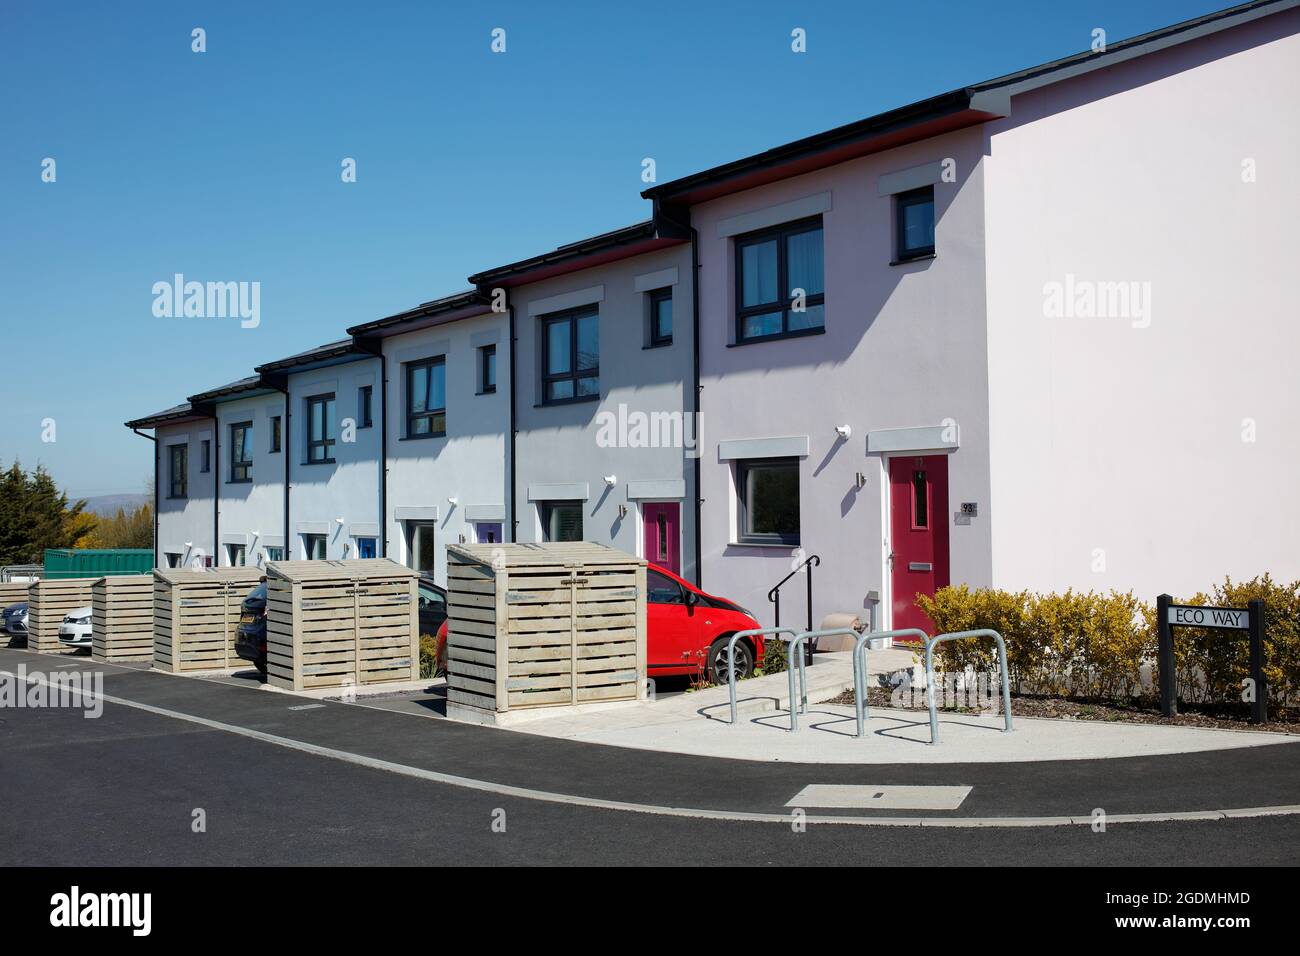 Neuere umweltfreundliche Häuser in einer kleinen Entwicklung in Roborough in der Nähe von Plymouth in Großbritannien. Häuser verfügen über Sonnenkollektoren und eine hohe thermische Effizienz. Stockfoto